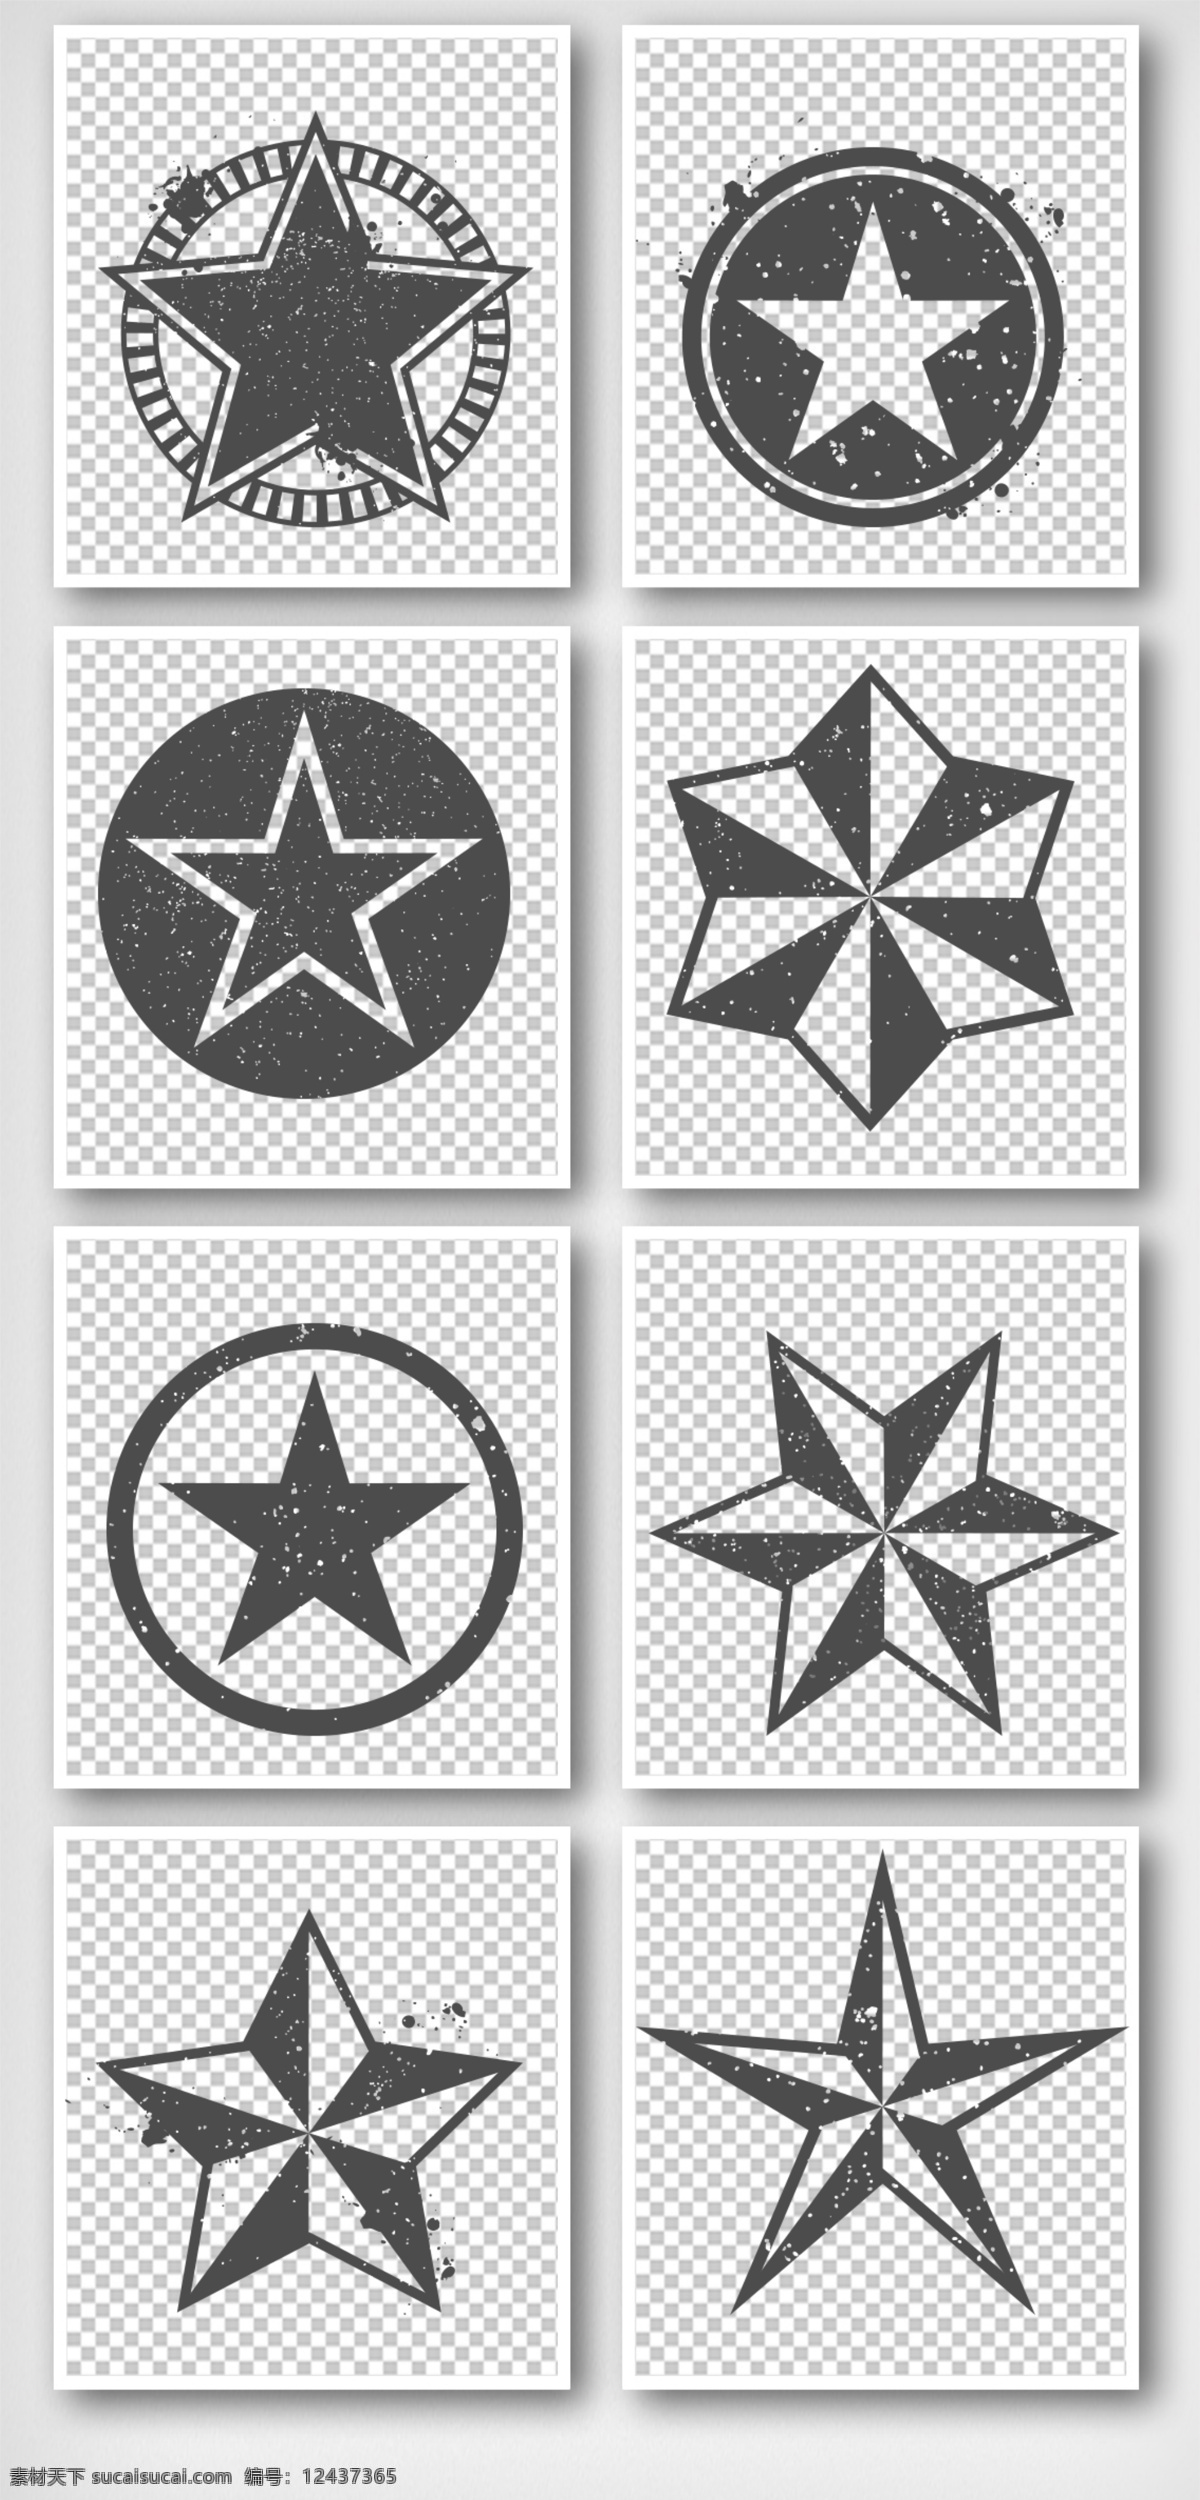 典 多角 星 元素 黑白 印章 标签 图标 标志 花纹 徽章 盖章 章印免费素材 免费模版 平面模版 元素模版